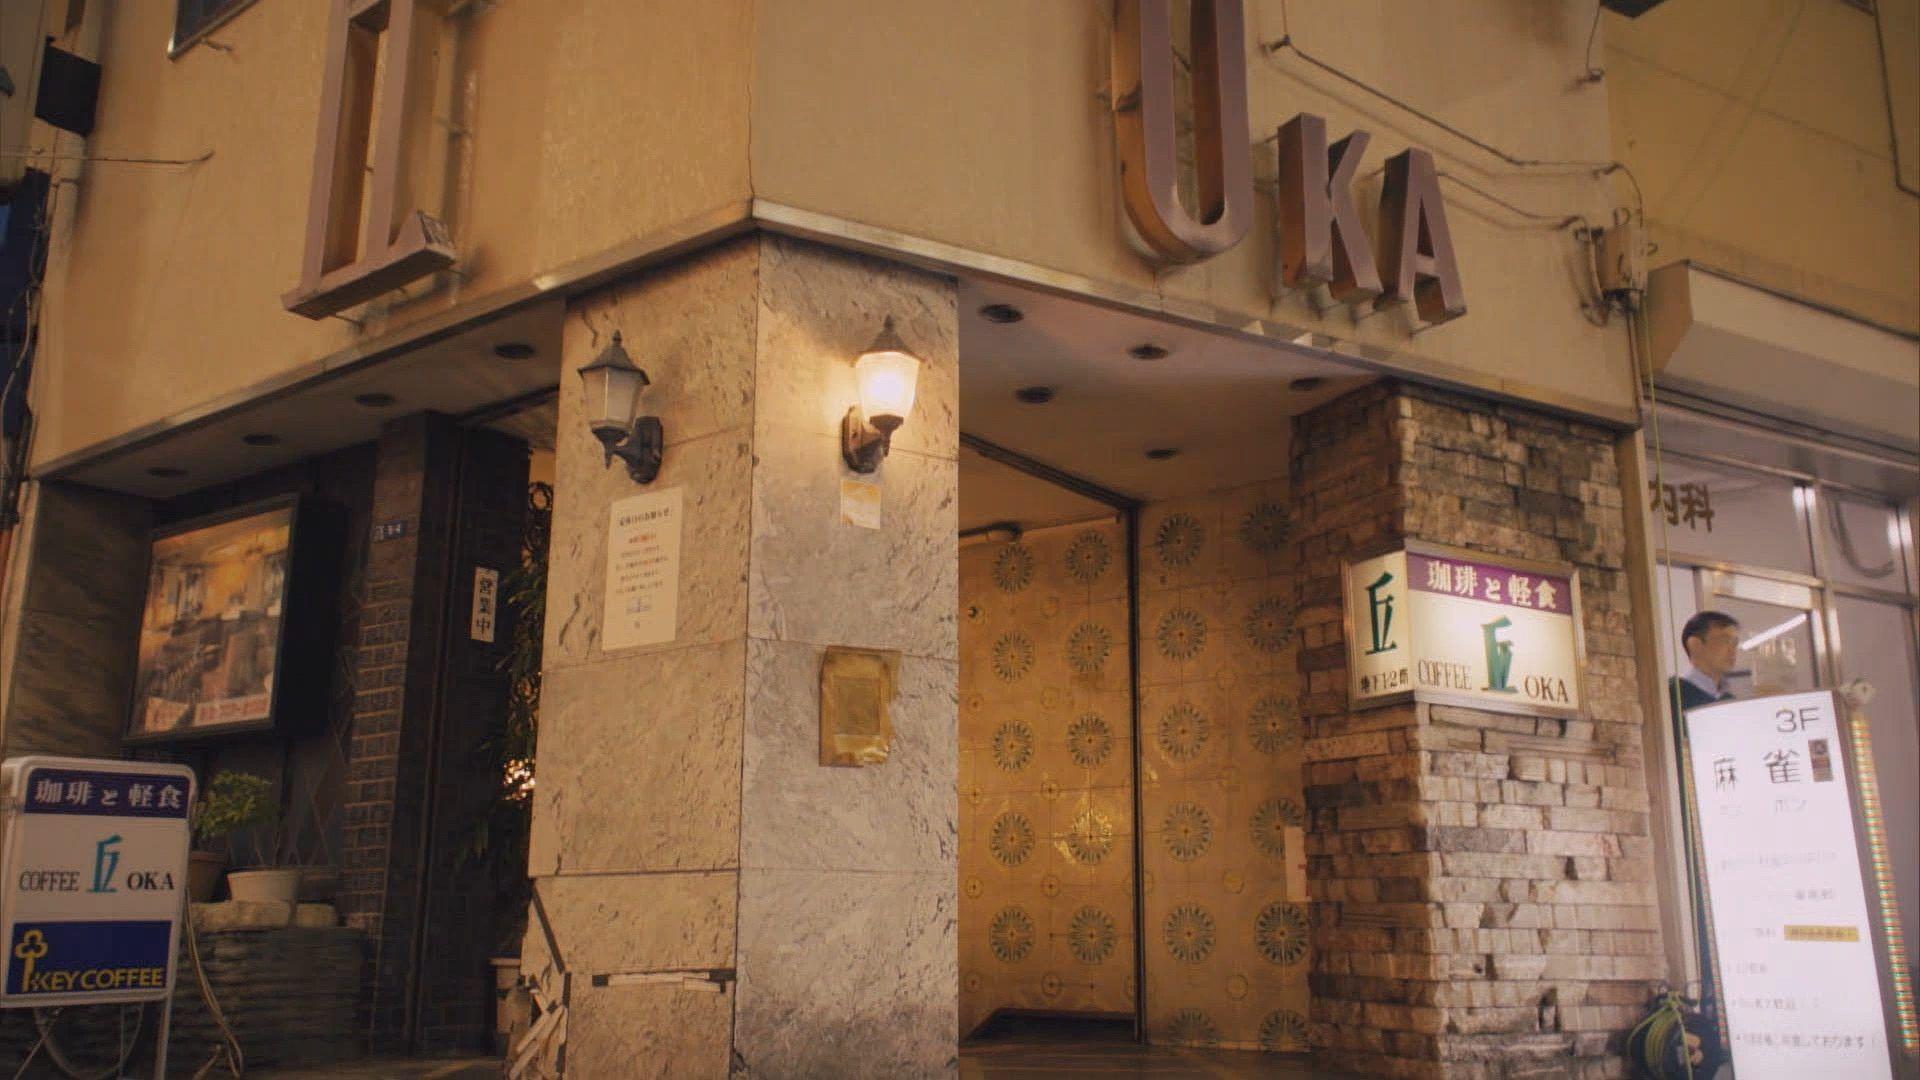 “丘”なのに“地下”！？上野のレトロゴージャスな喫茶店「丘」をご紹介！『純喫茶に恋をして』ロケ地